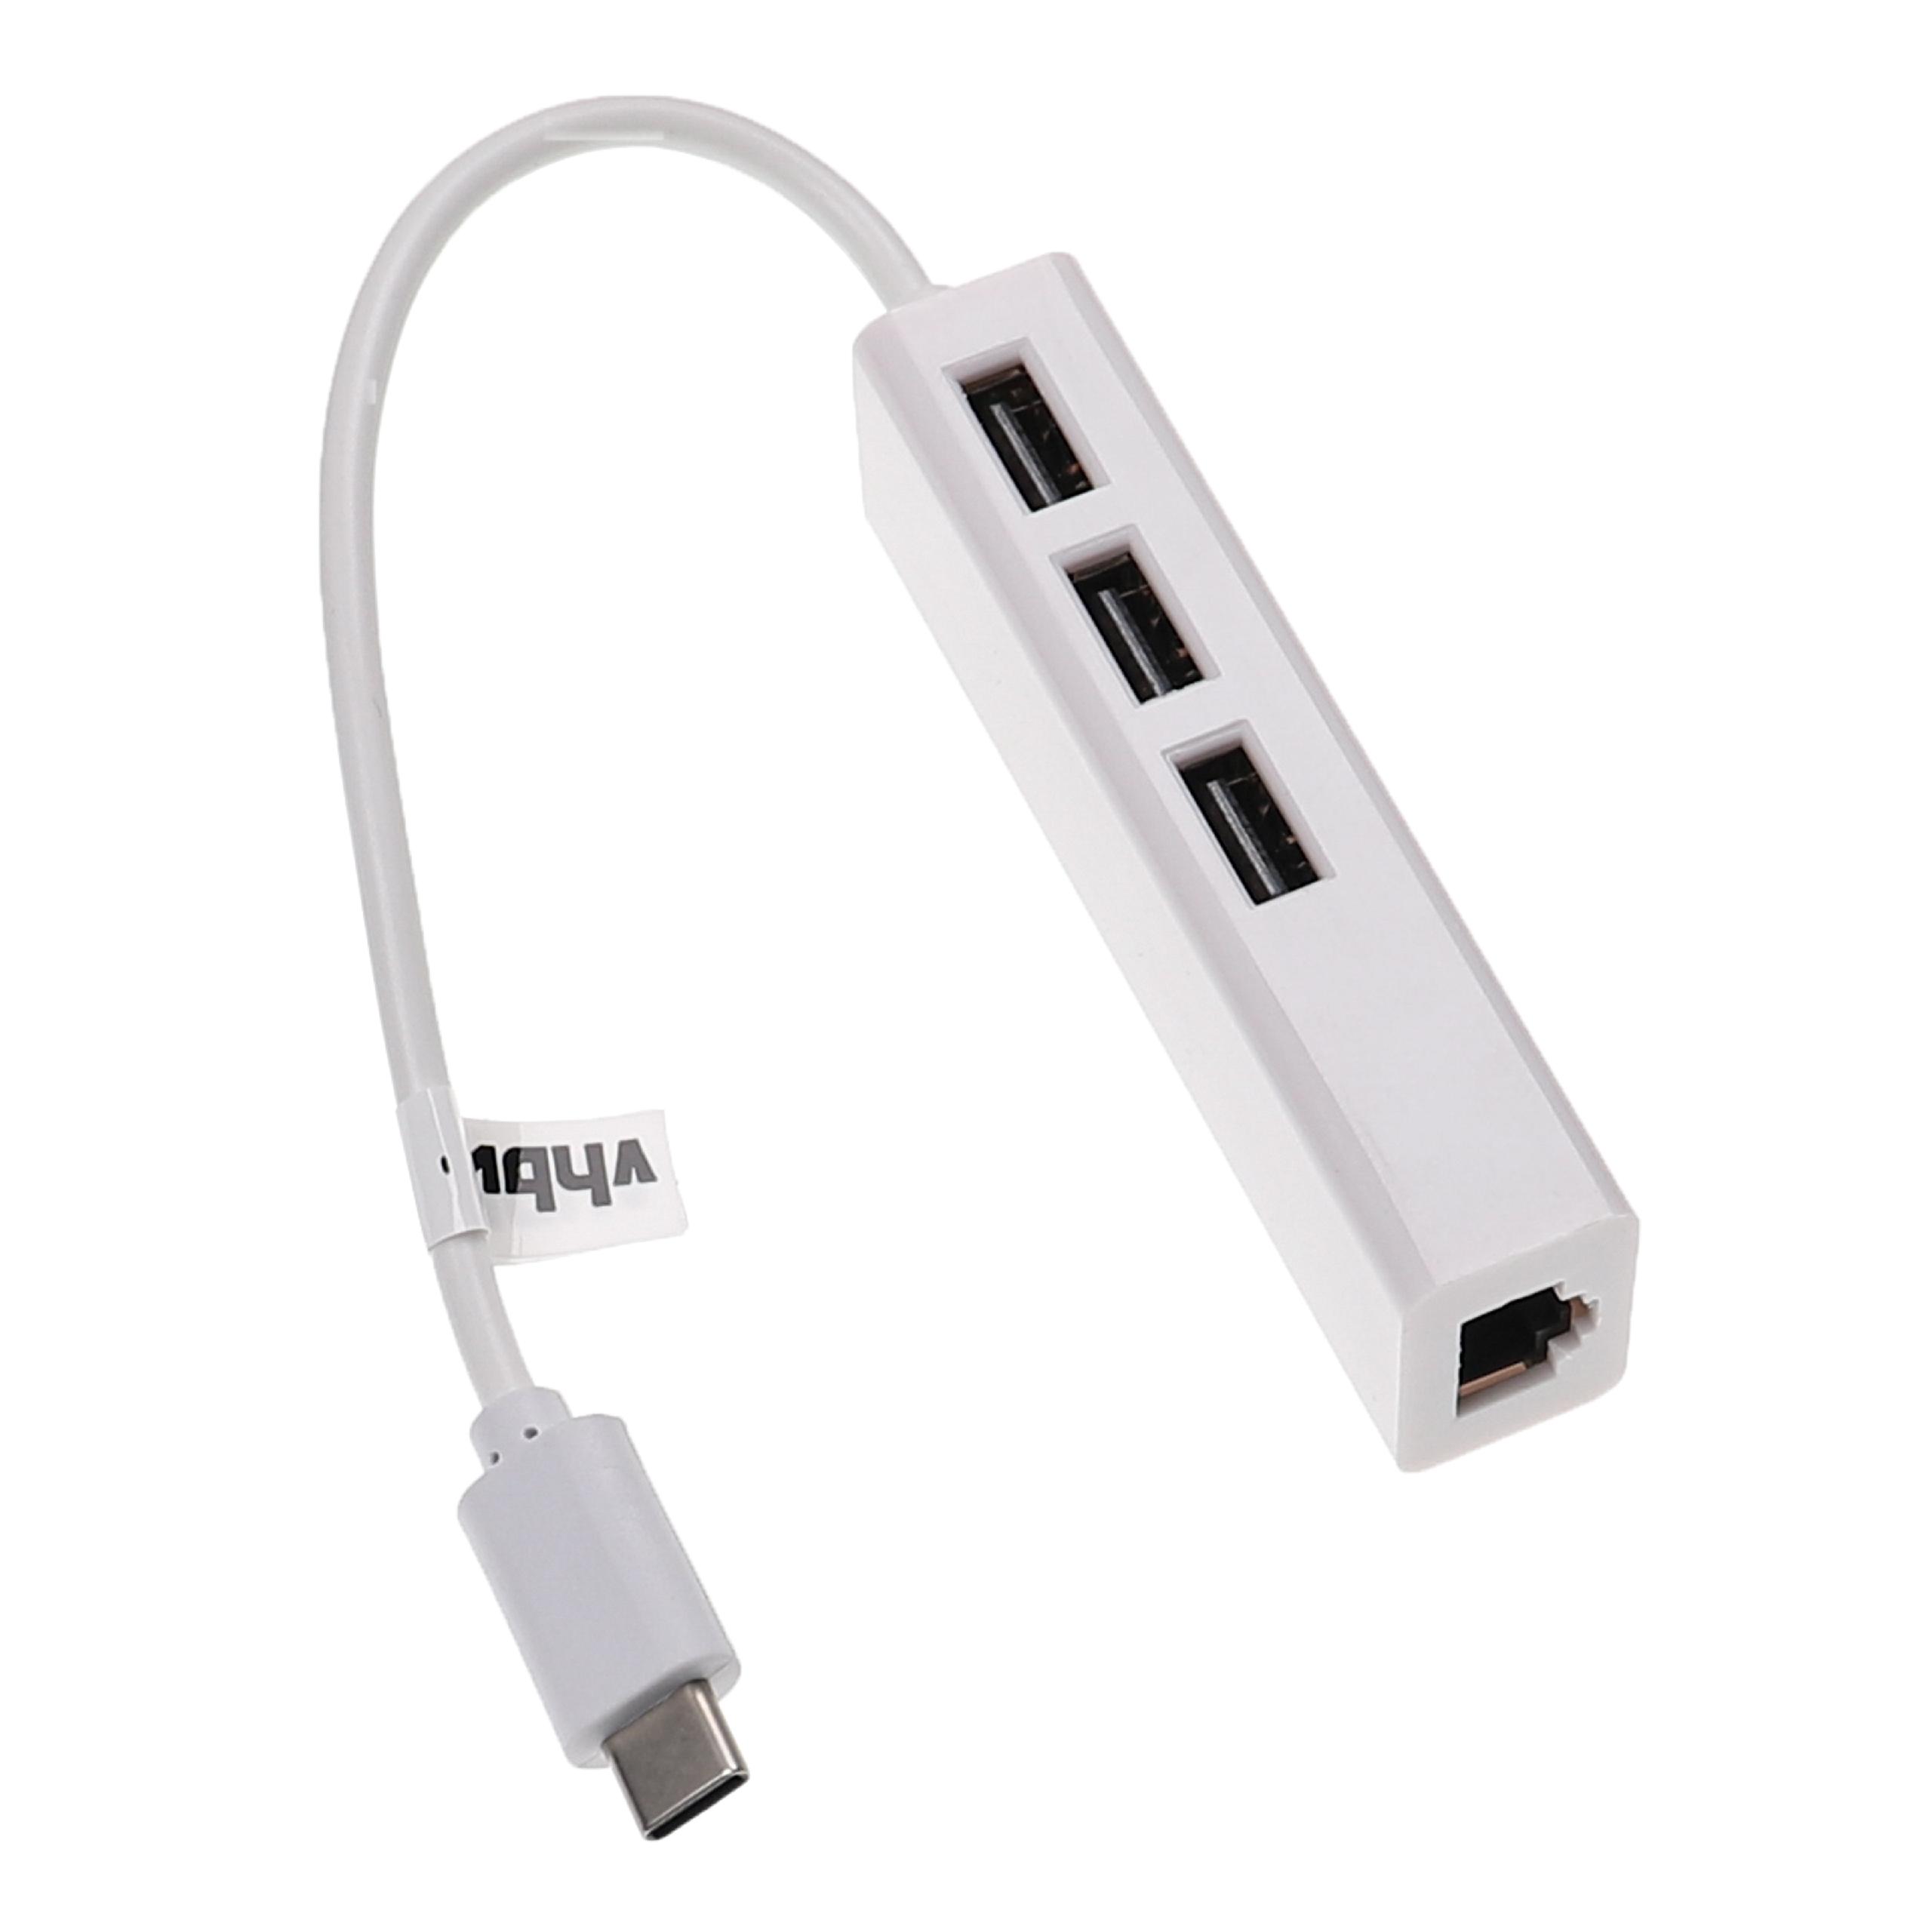 Adattatore Ethernet da USB-C (m) a RJ45 (f) per laptop, notebook, PC + 3 porte USB-A aggiuntive